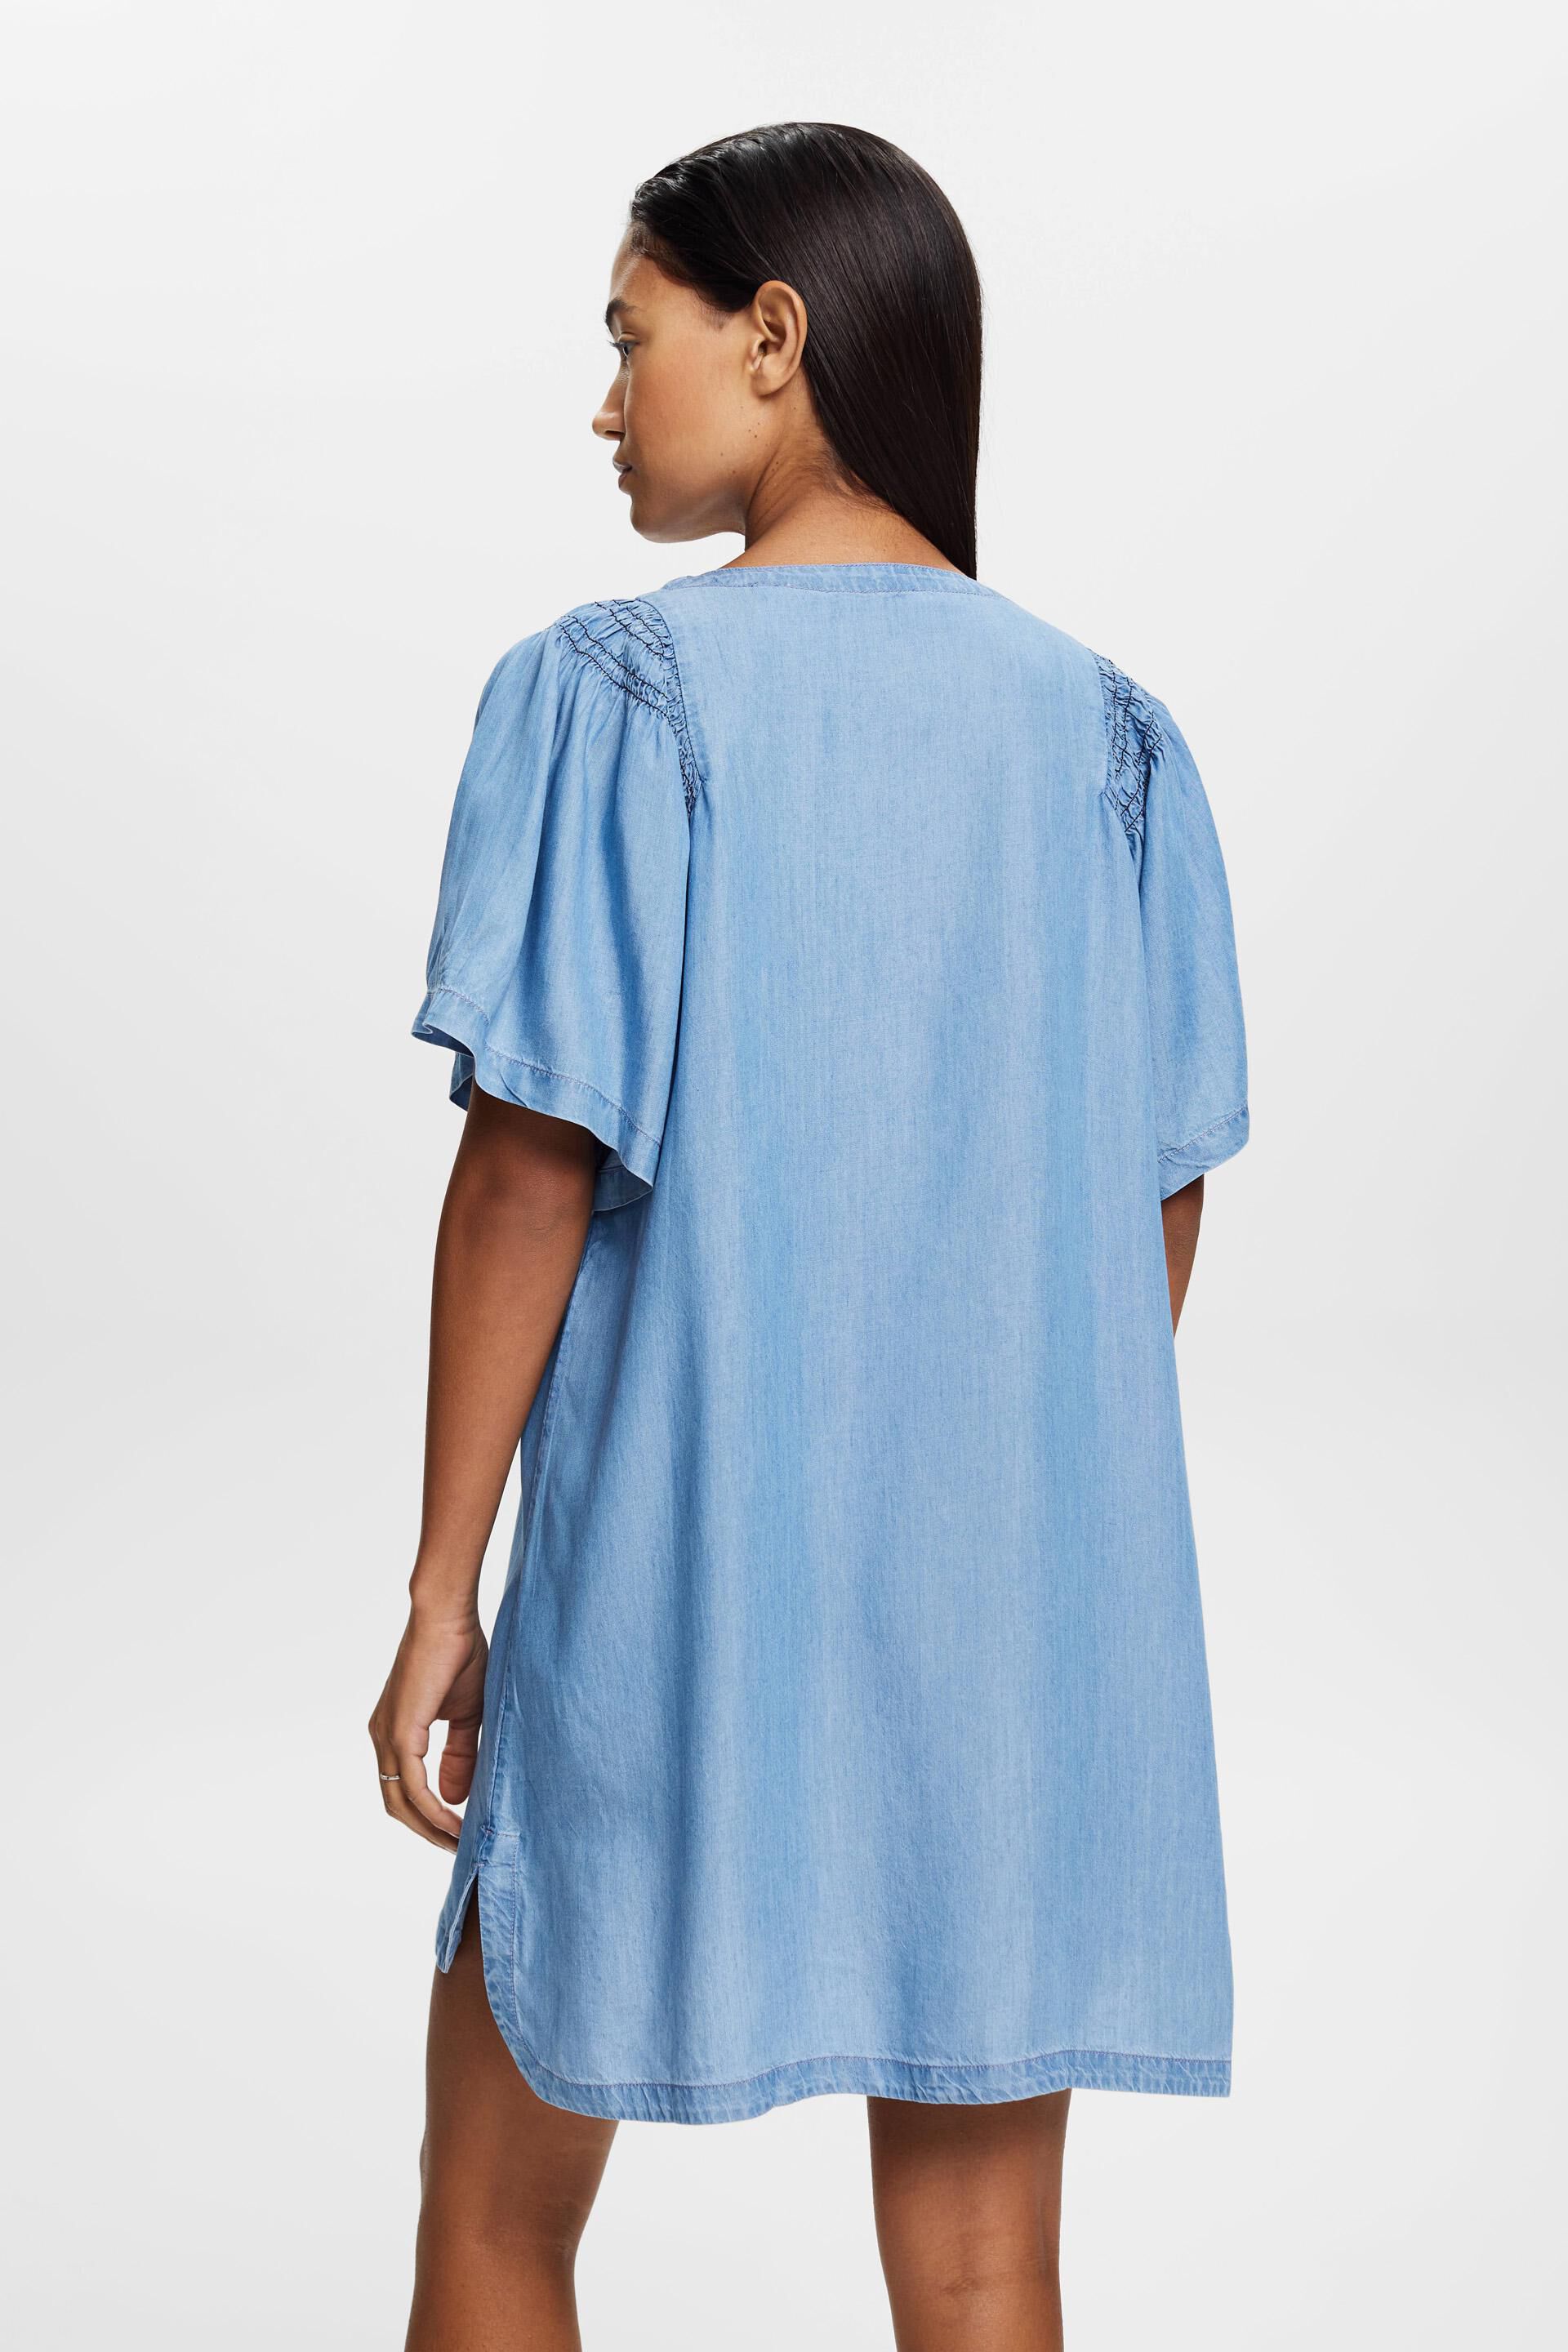 Buy Blue Denim Shirt Dress for Women Online